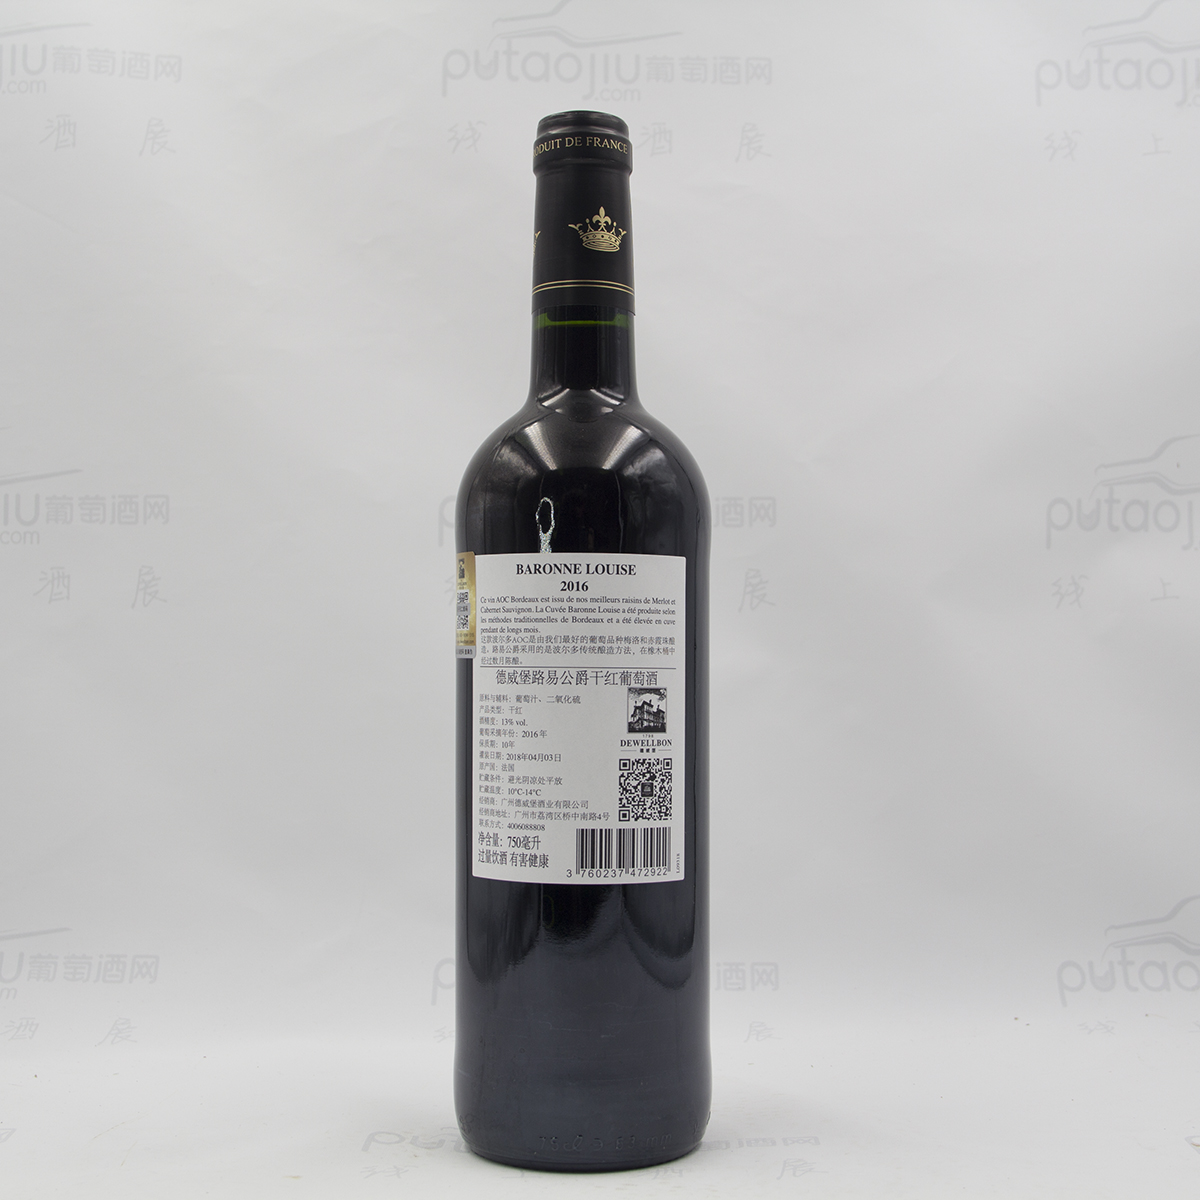  法国波尔多红葡萄园酒庄德威堡路易公爵赤霞珠梅洛AOC干红葡萄酒